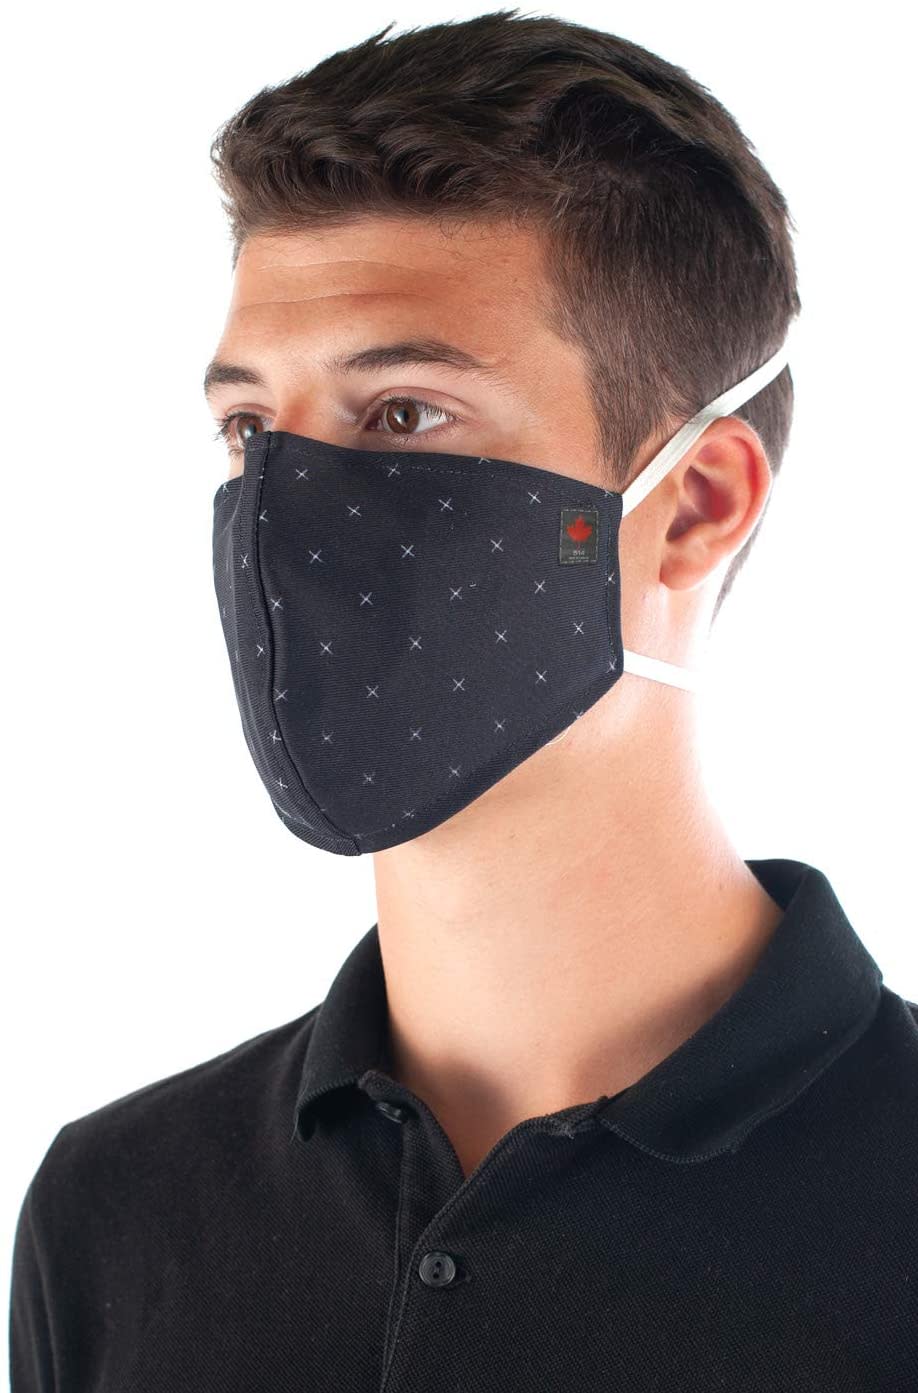 Reusable DELTA Face Mask. Image via Amazon.